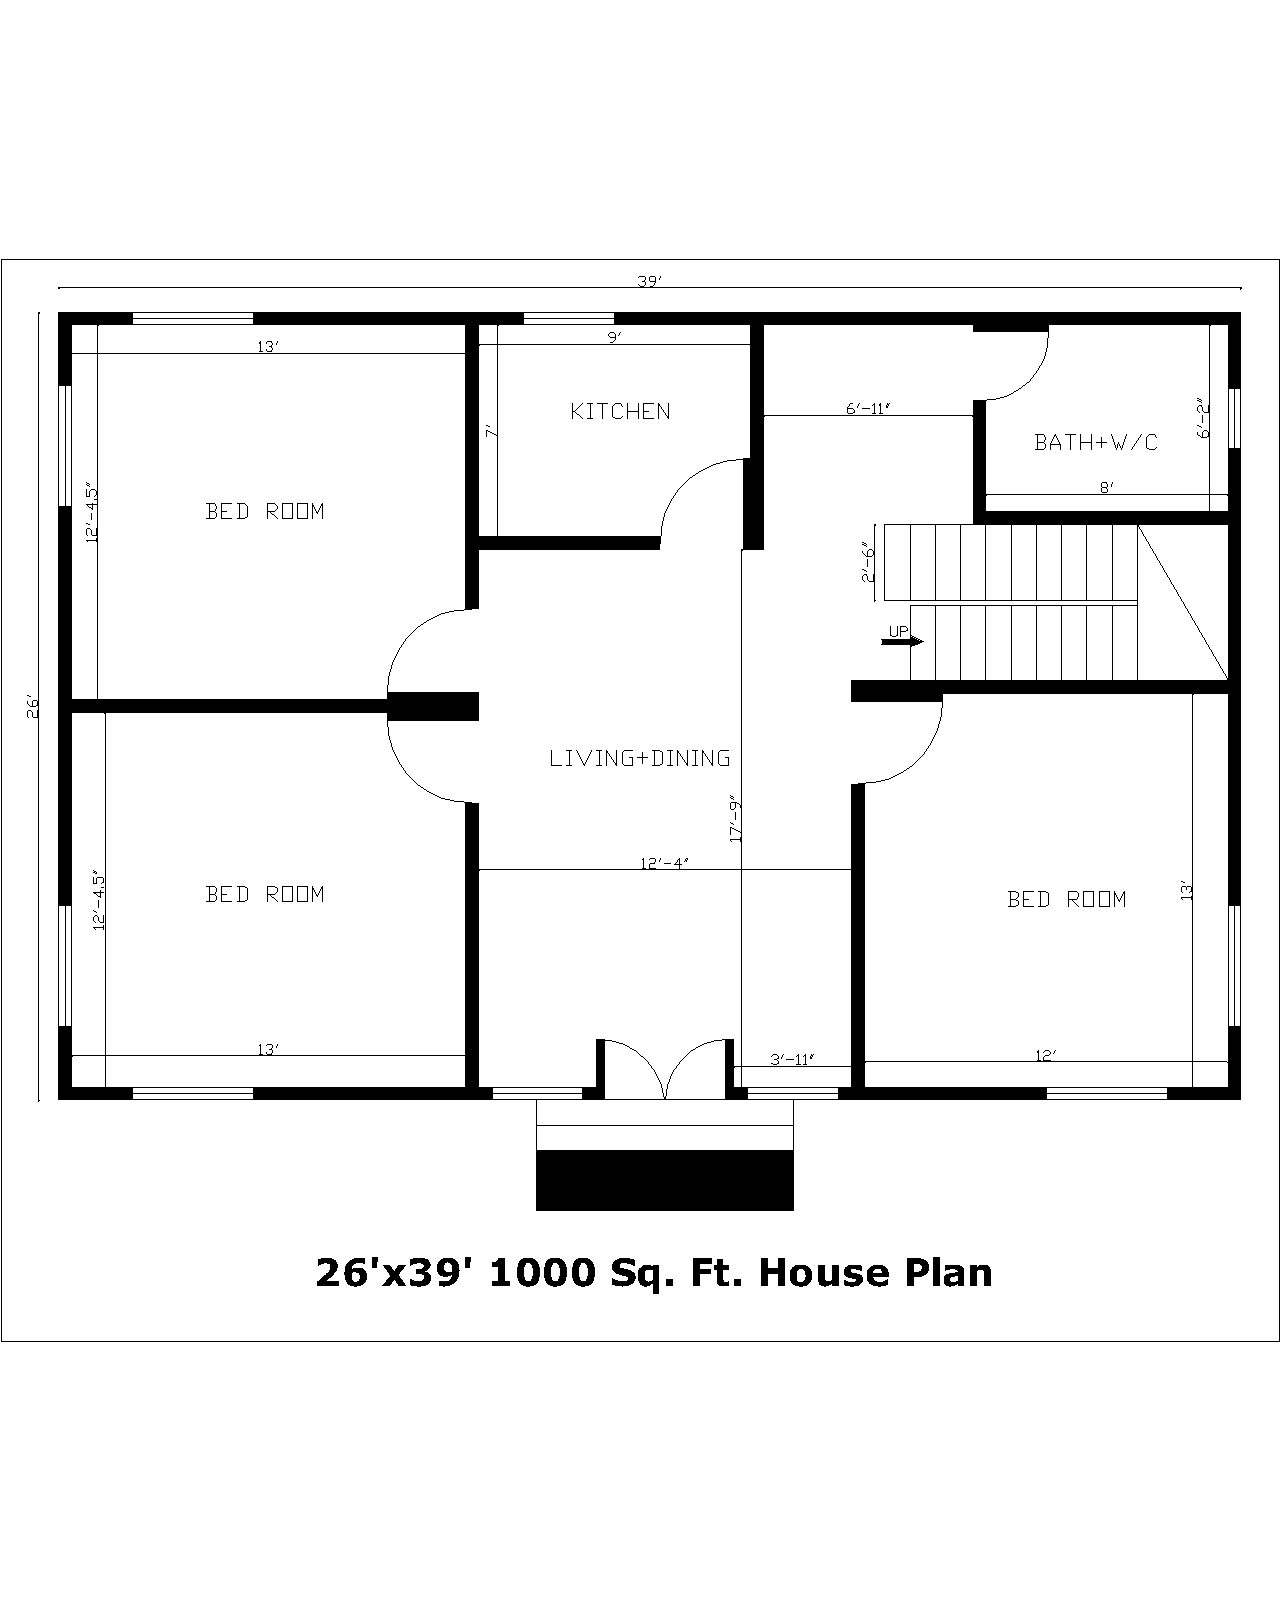 26'x39' 1000 Sq. Ft. House Plan | 26'x39' 1000 Sq. Ft. Gharka Naksha